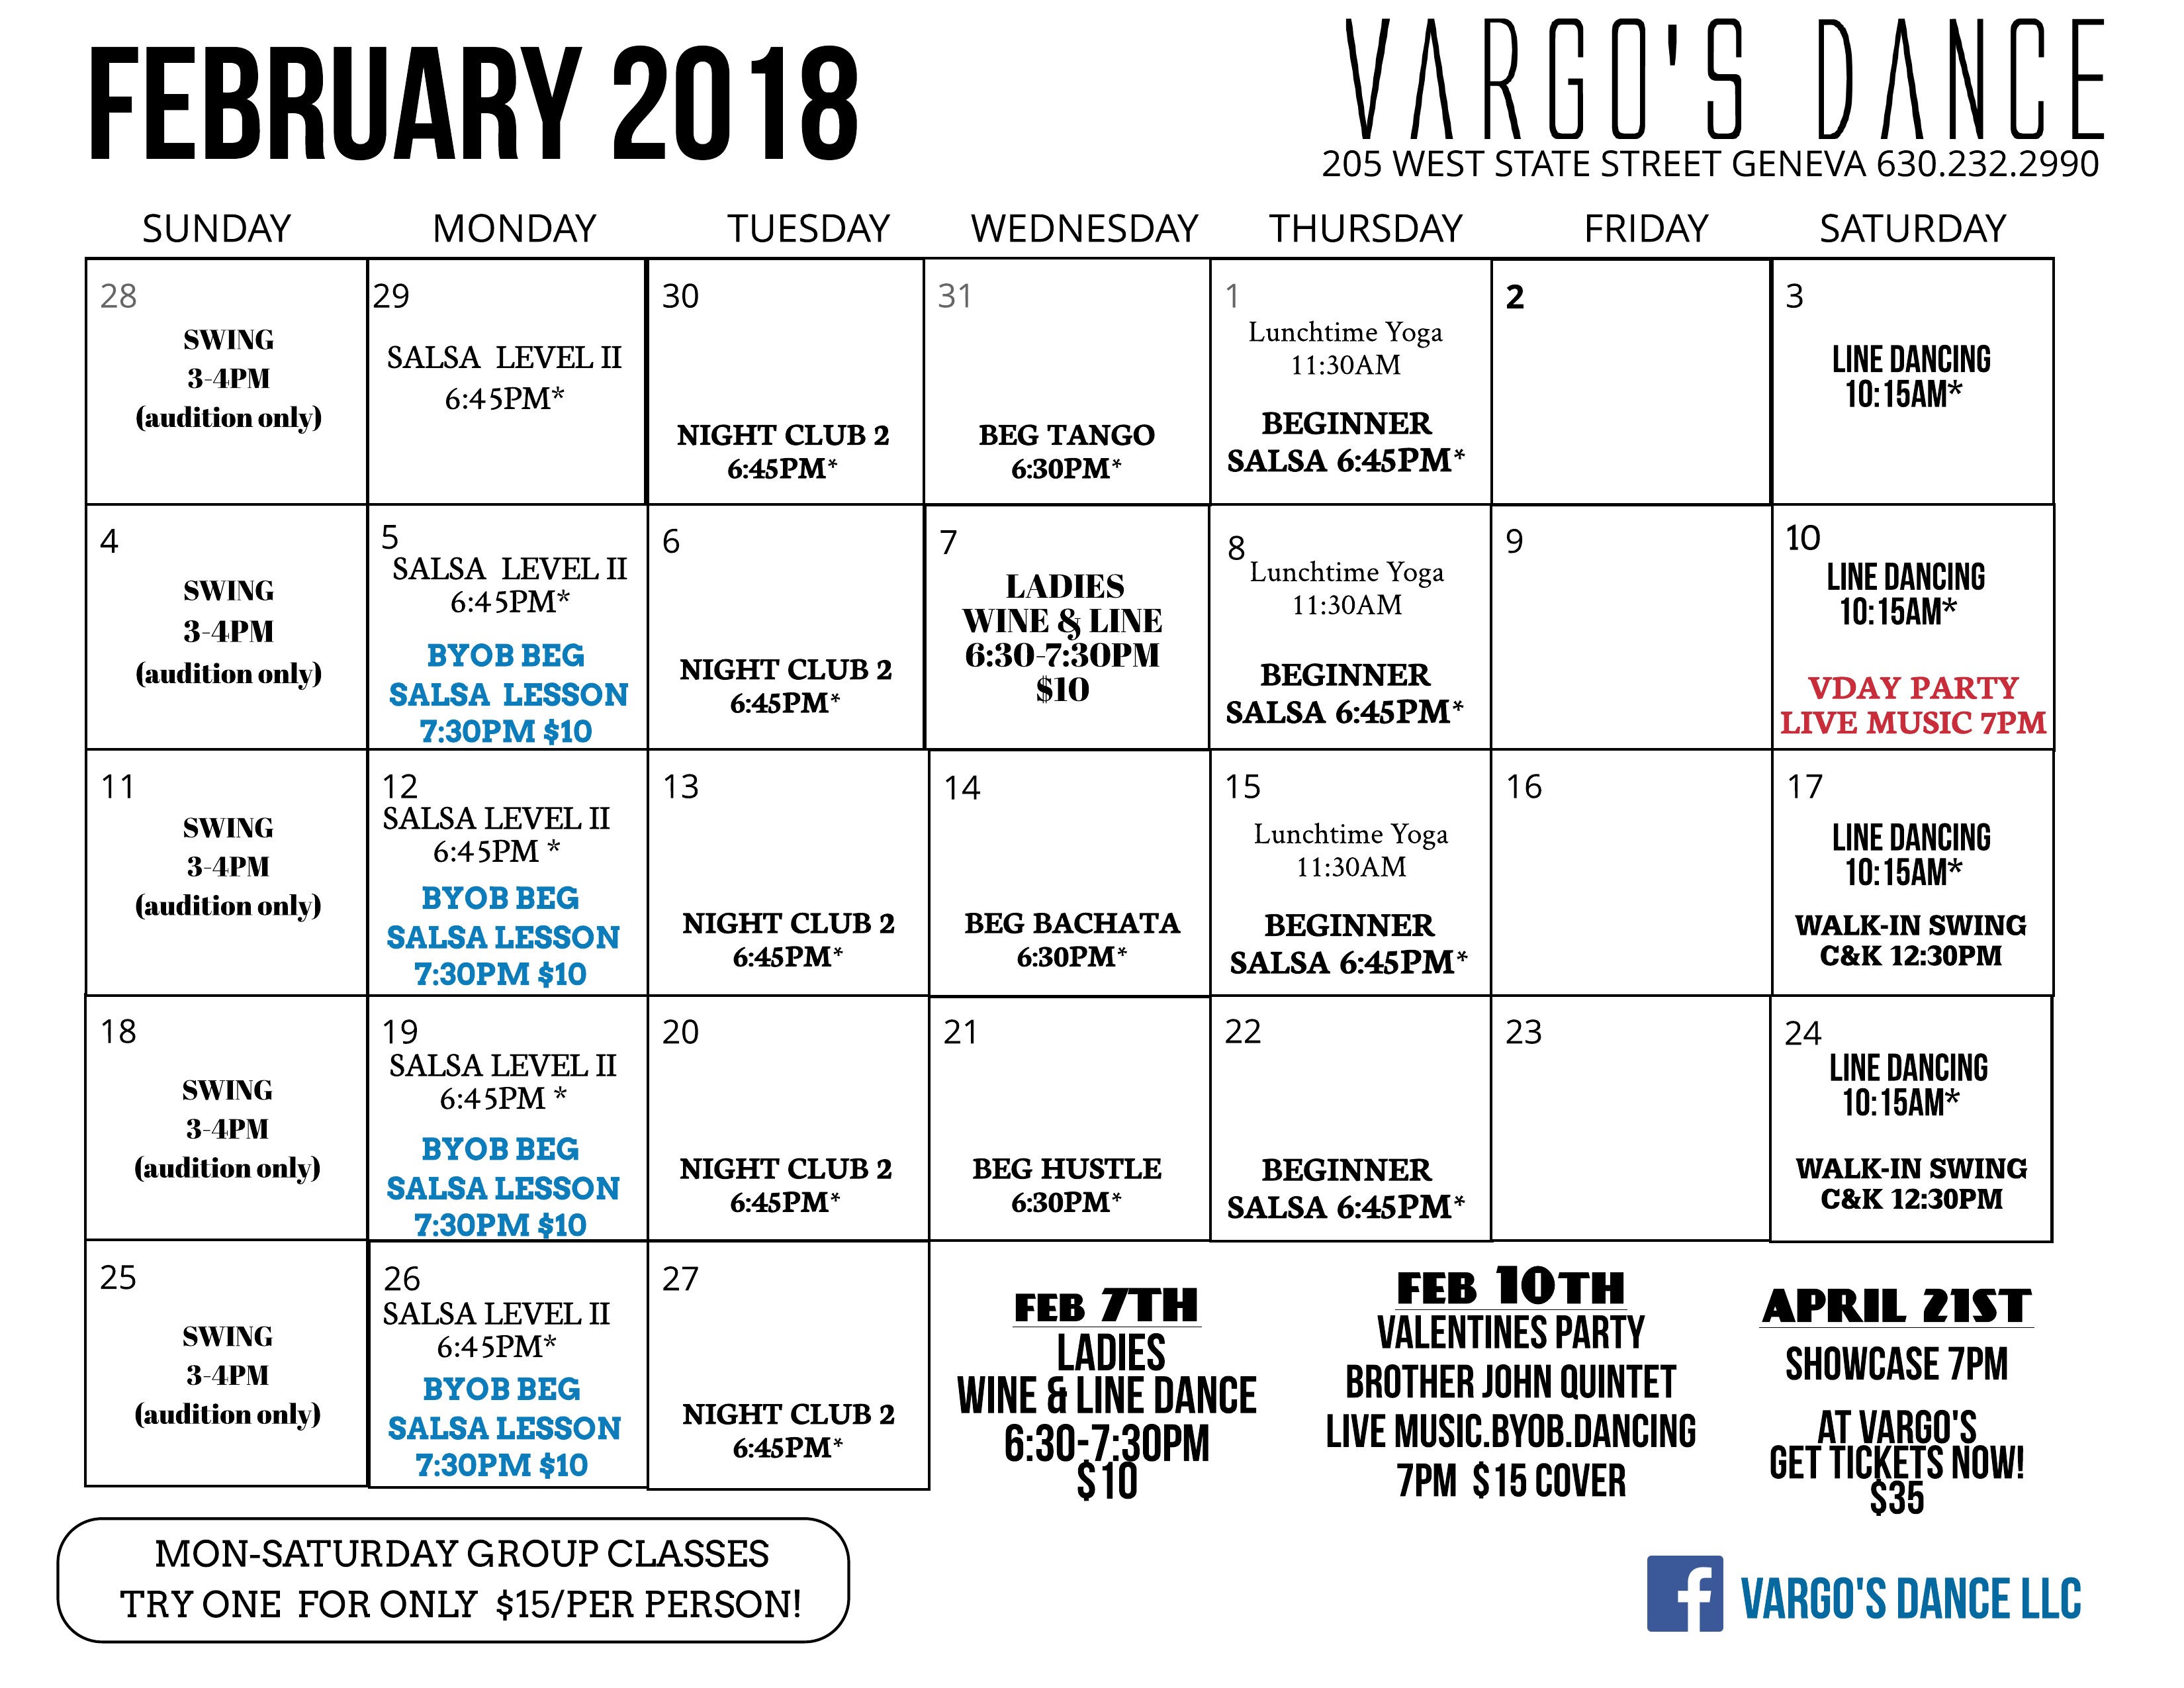 Feb calendar Vargo #39 s Dance Geneva